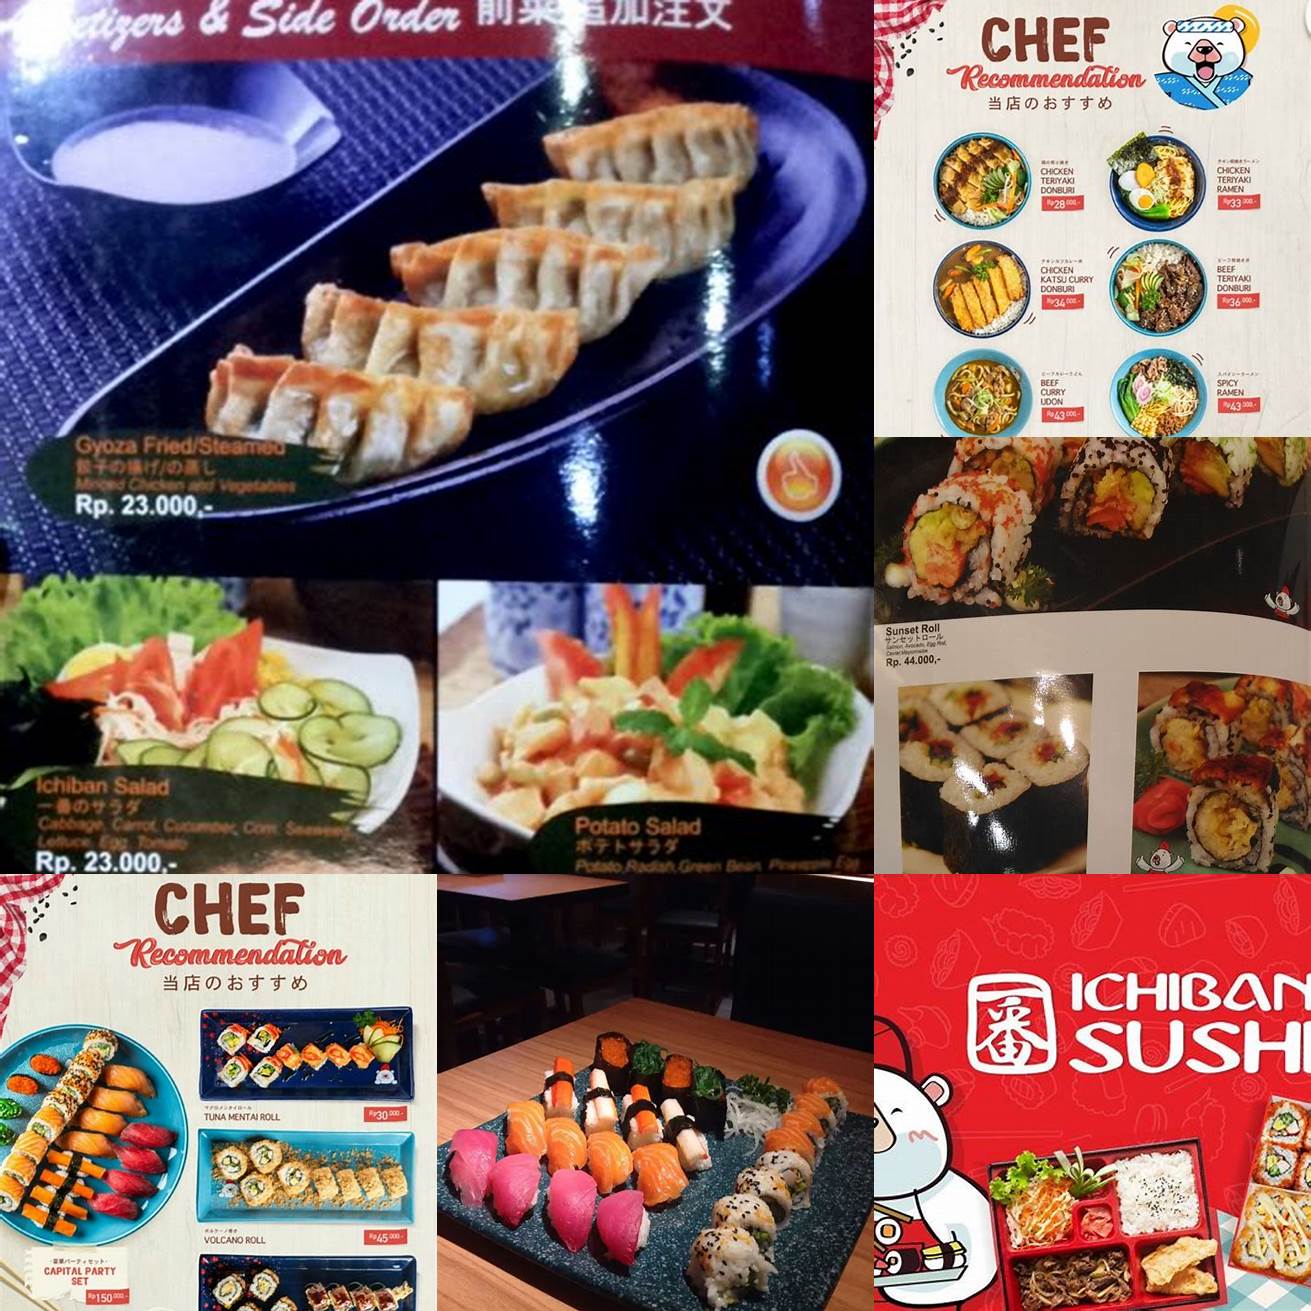 Pilih Restoran Ichiban Sushi Terdekat